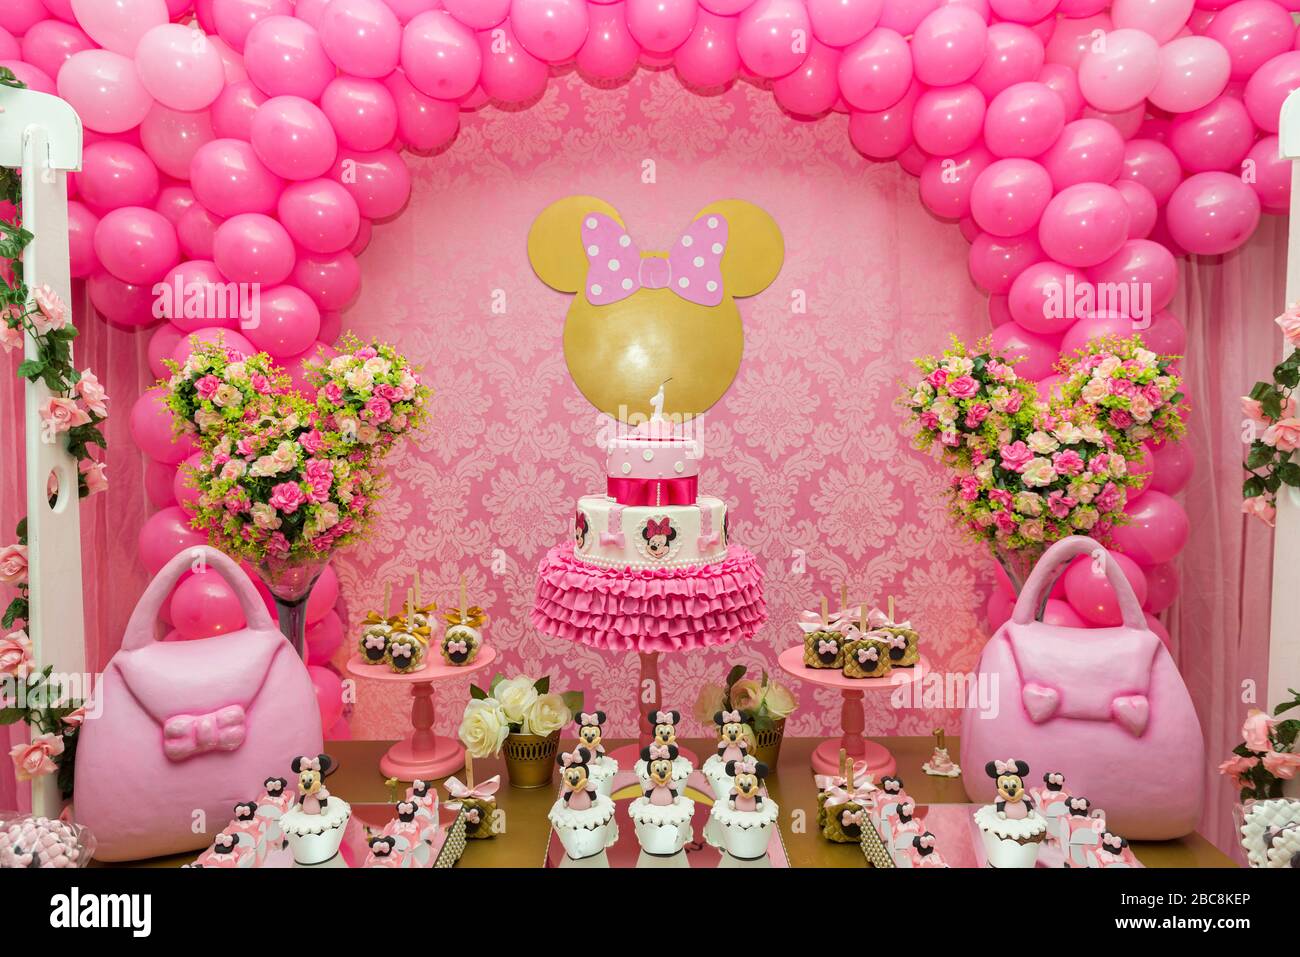 Minnie Mouse Balloon Banque D Image Et Photos Alamy